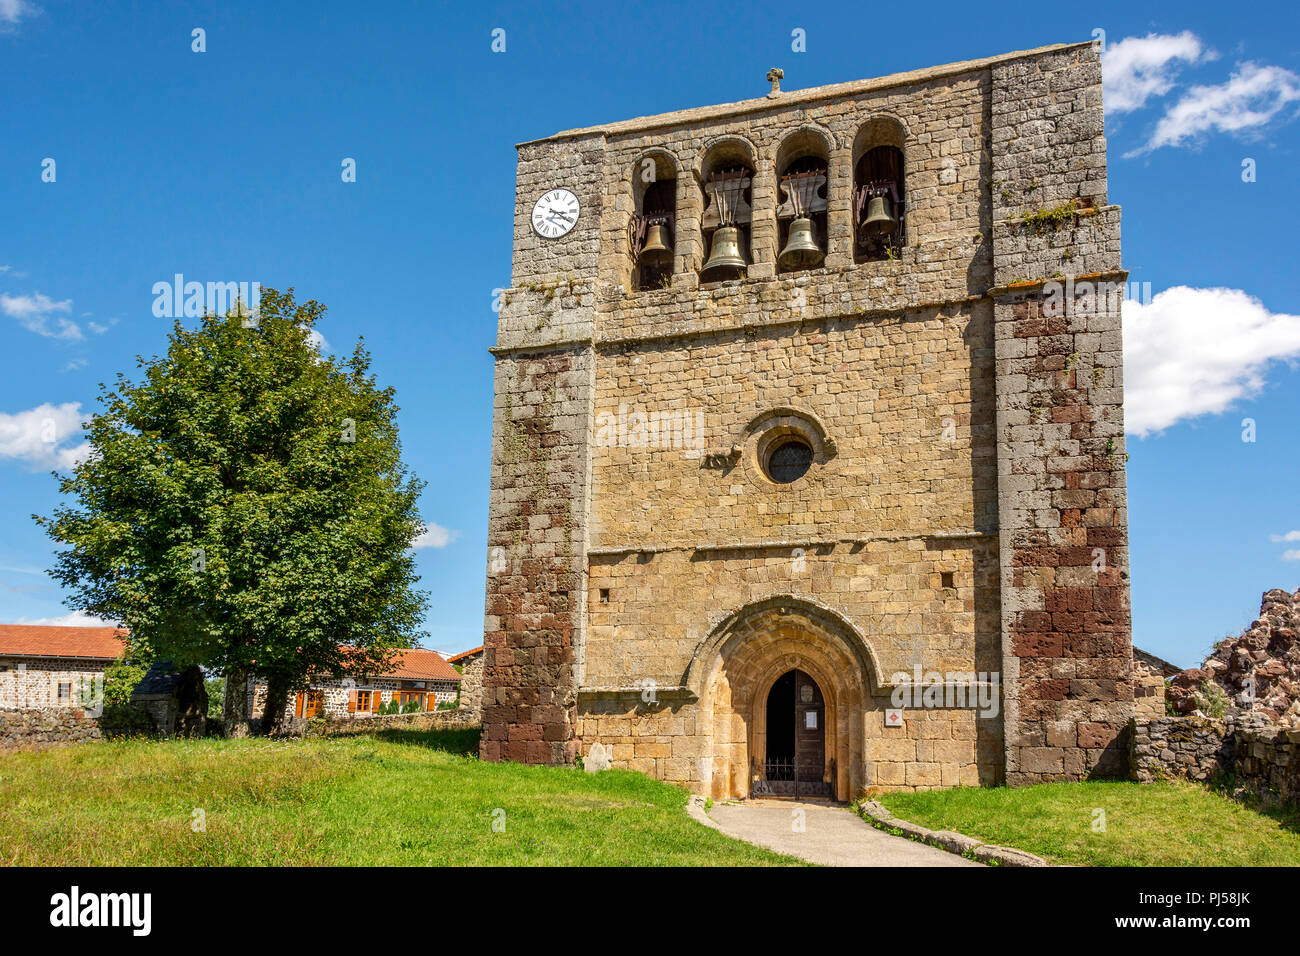 Kirche von Saint Paul de Tartas Dorf und seine Glocke - Giebel, Haute Loire, Auvergne Rhône-Alpes, Frankreich, Europa Stockfoto